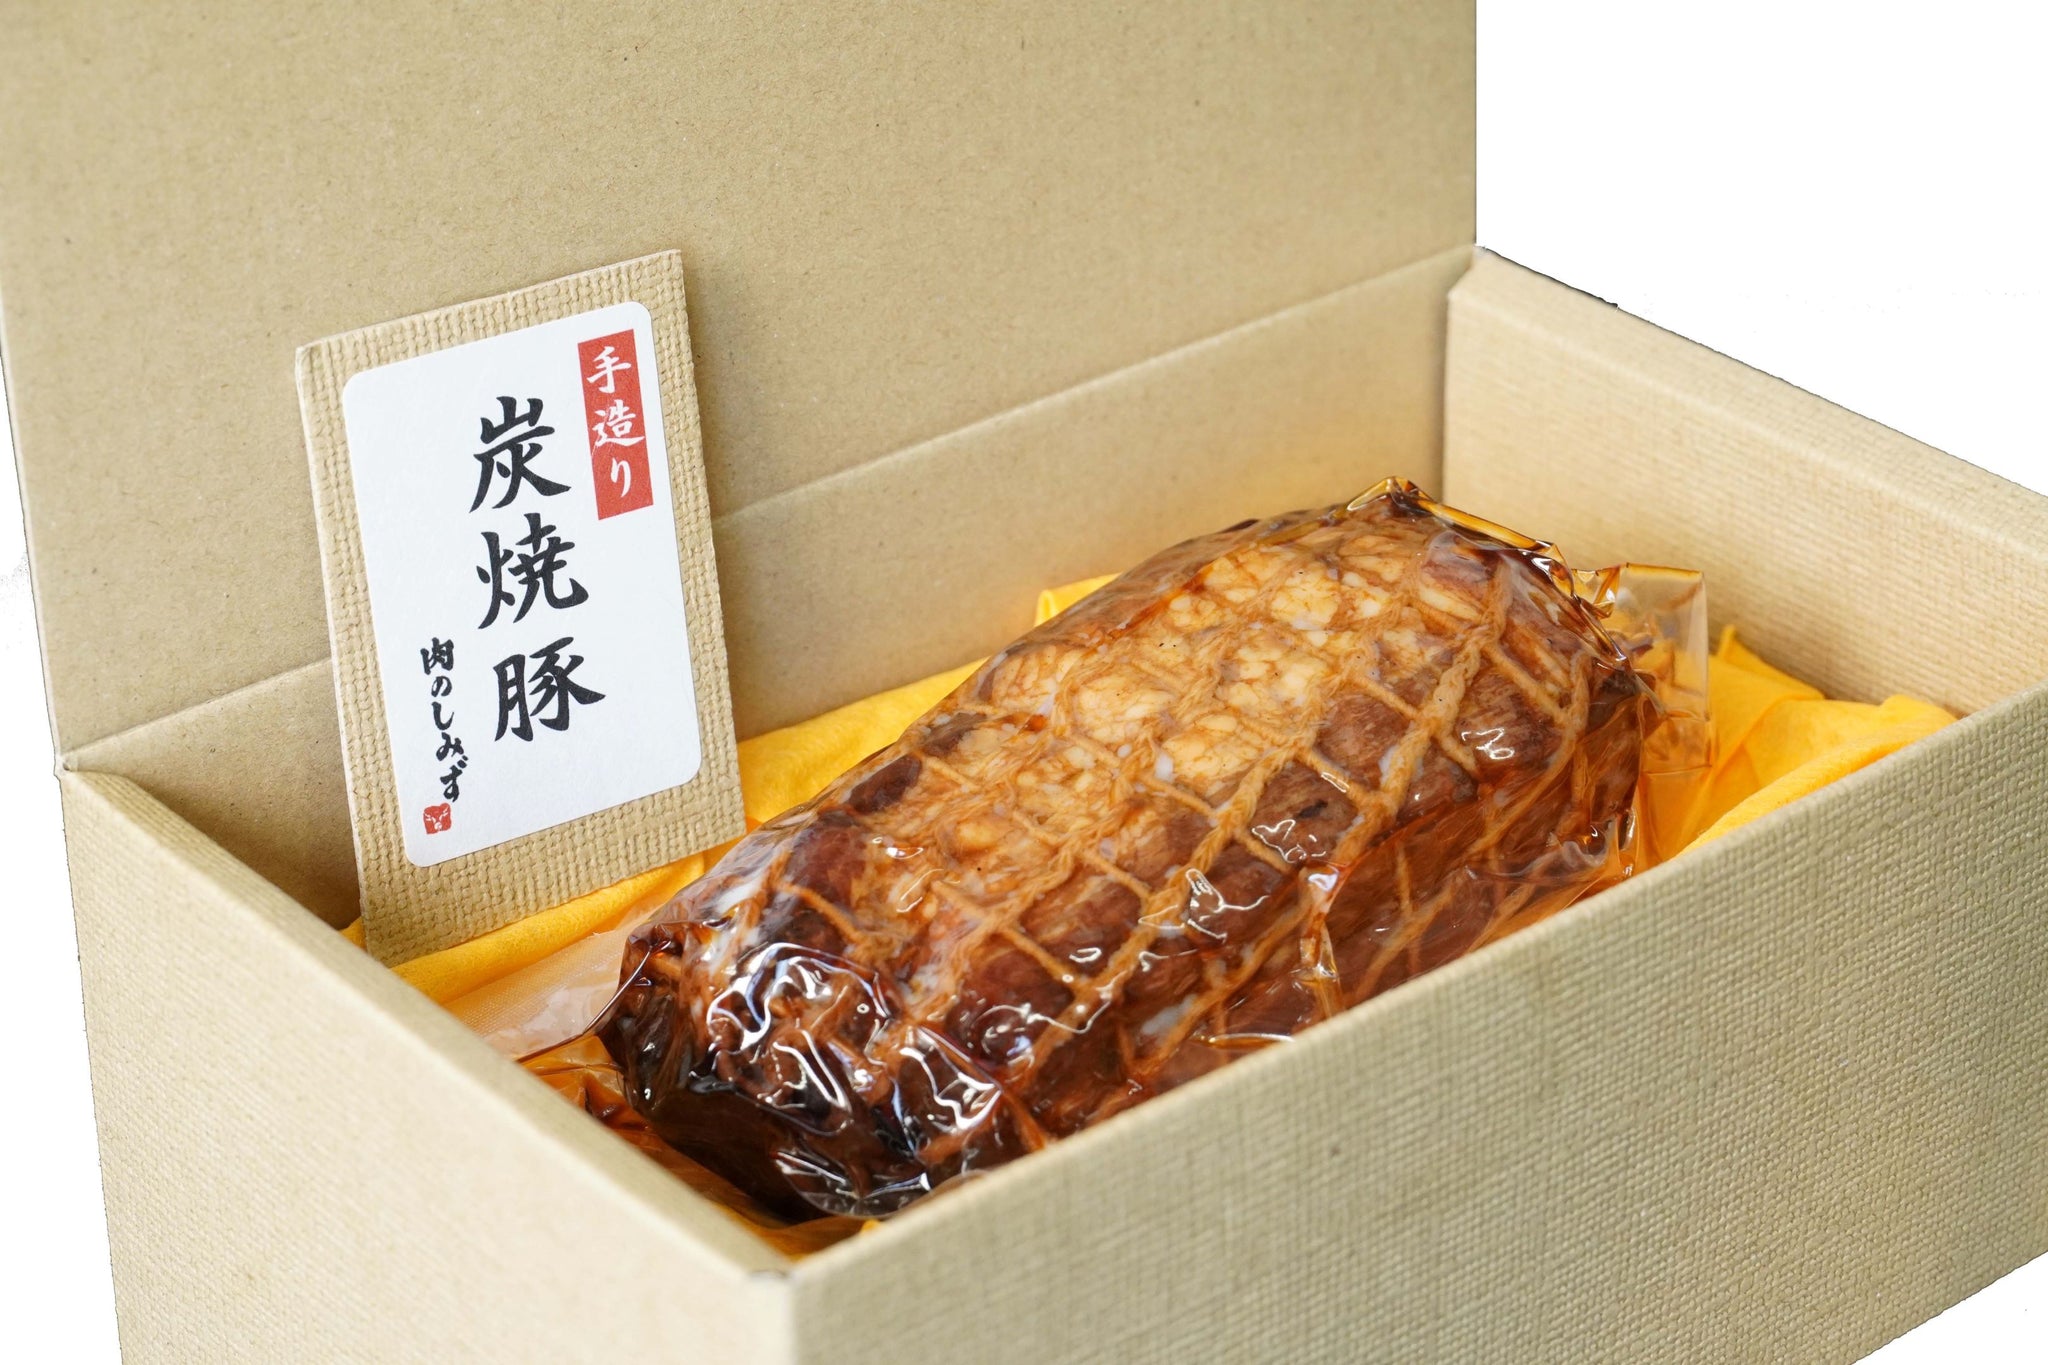 自家製焼豚 1本(約300g) 【最安値】 - 肉惣菜、肉料理